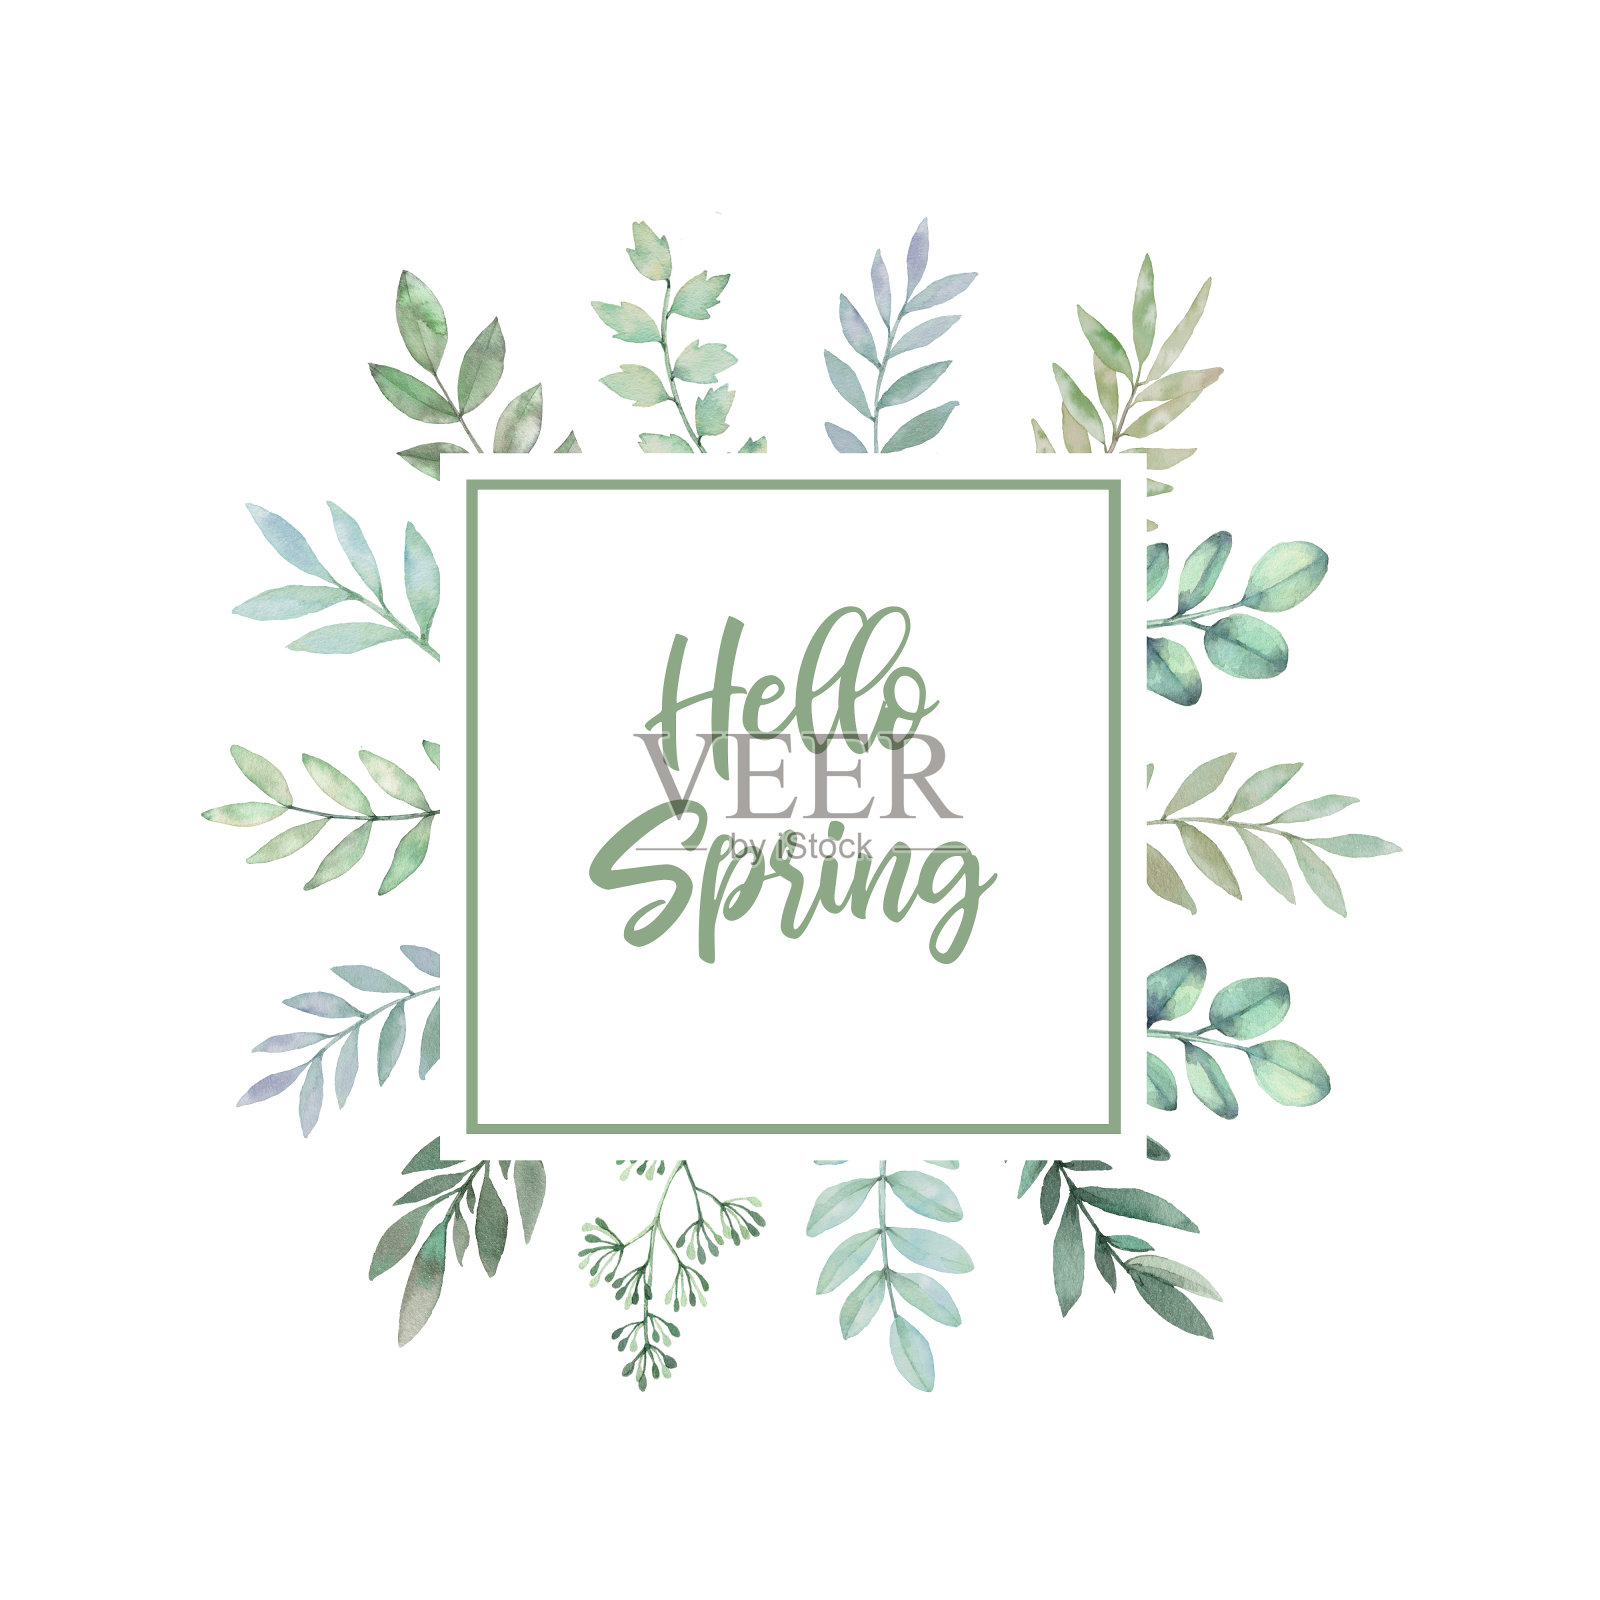 手绘水彩插图。绿色的枝、叶和花的植物学标签。你好,春天。花的设计元素。完美的邀请，贺卡，印刷品，包装等插画图片素材